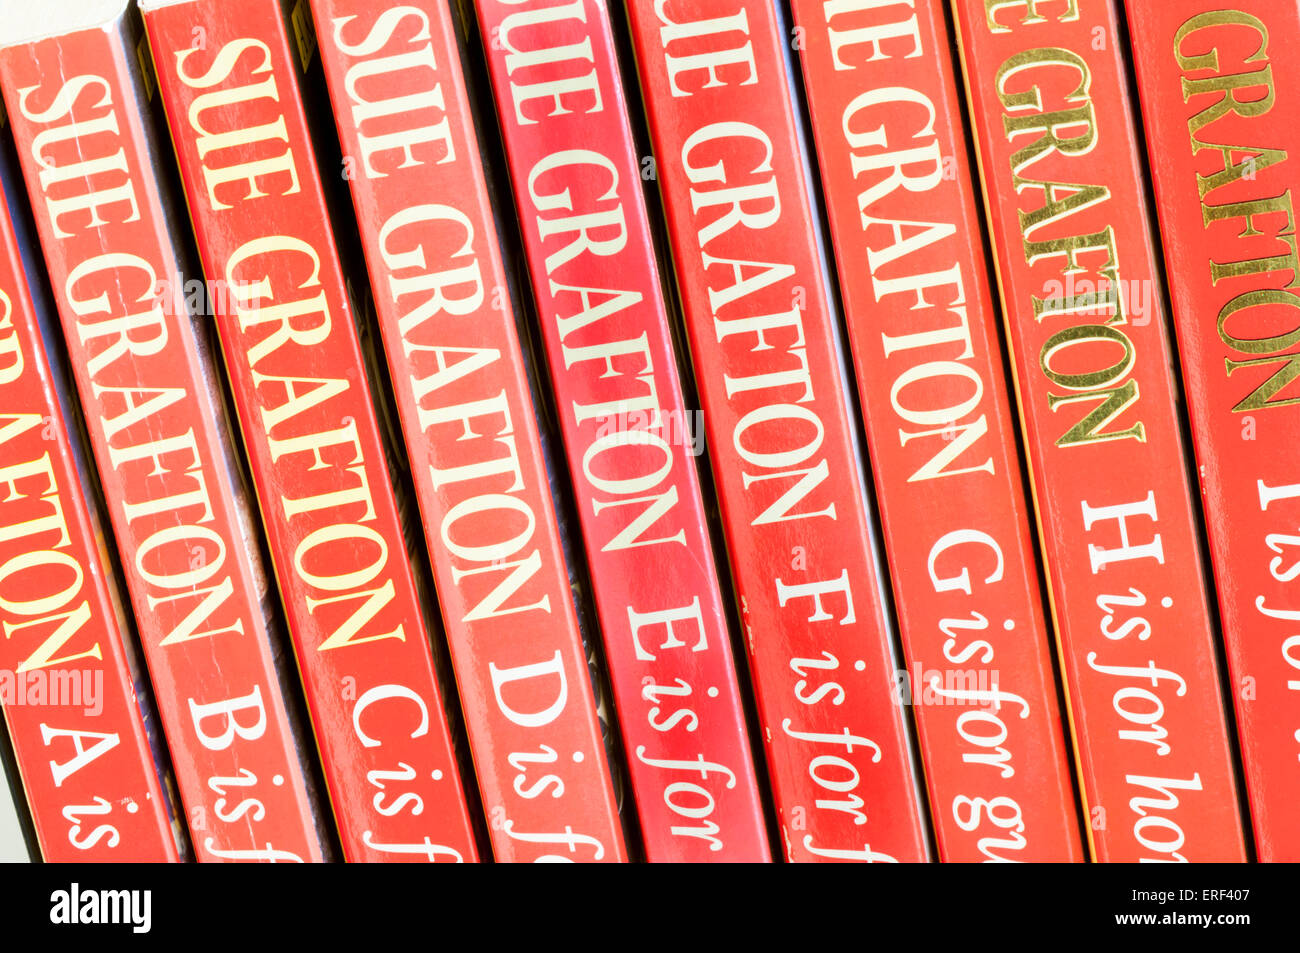 Le premier livre de volumes de Sue Grafton's alphabet série de romans policiers mettant en vedette Kinsey Millhone. Banque D'Images